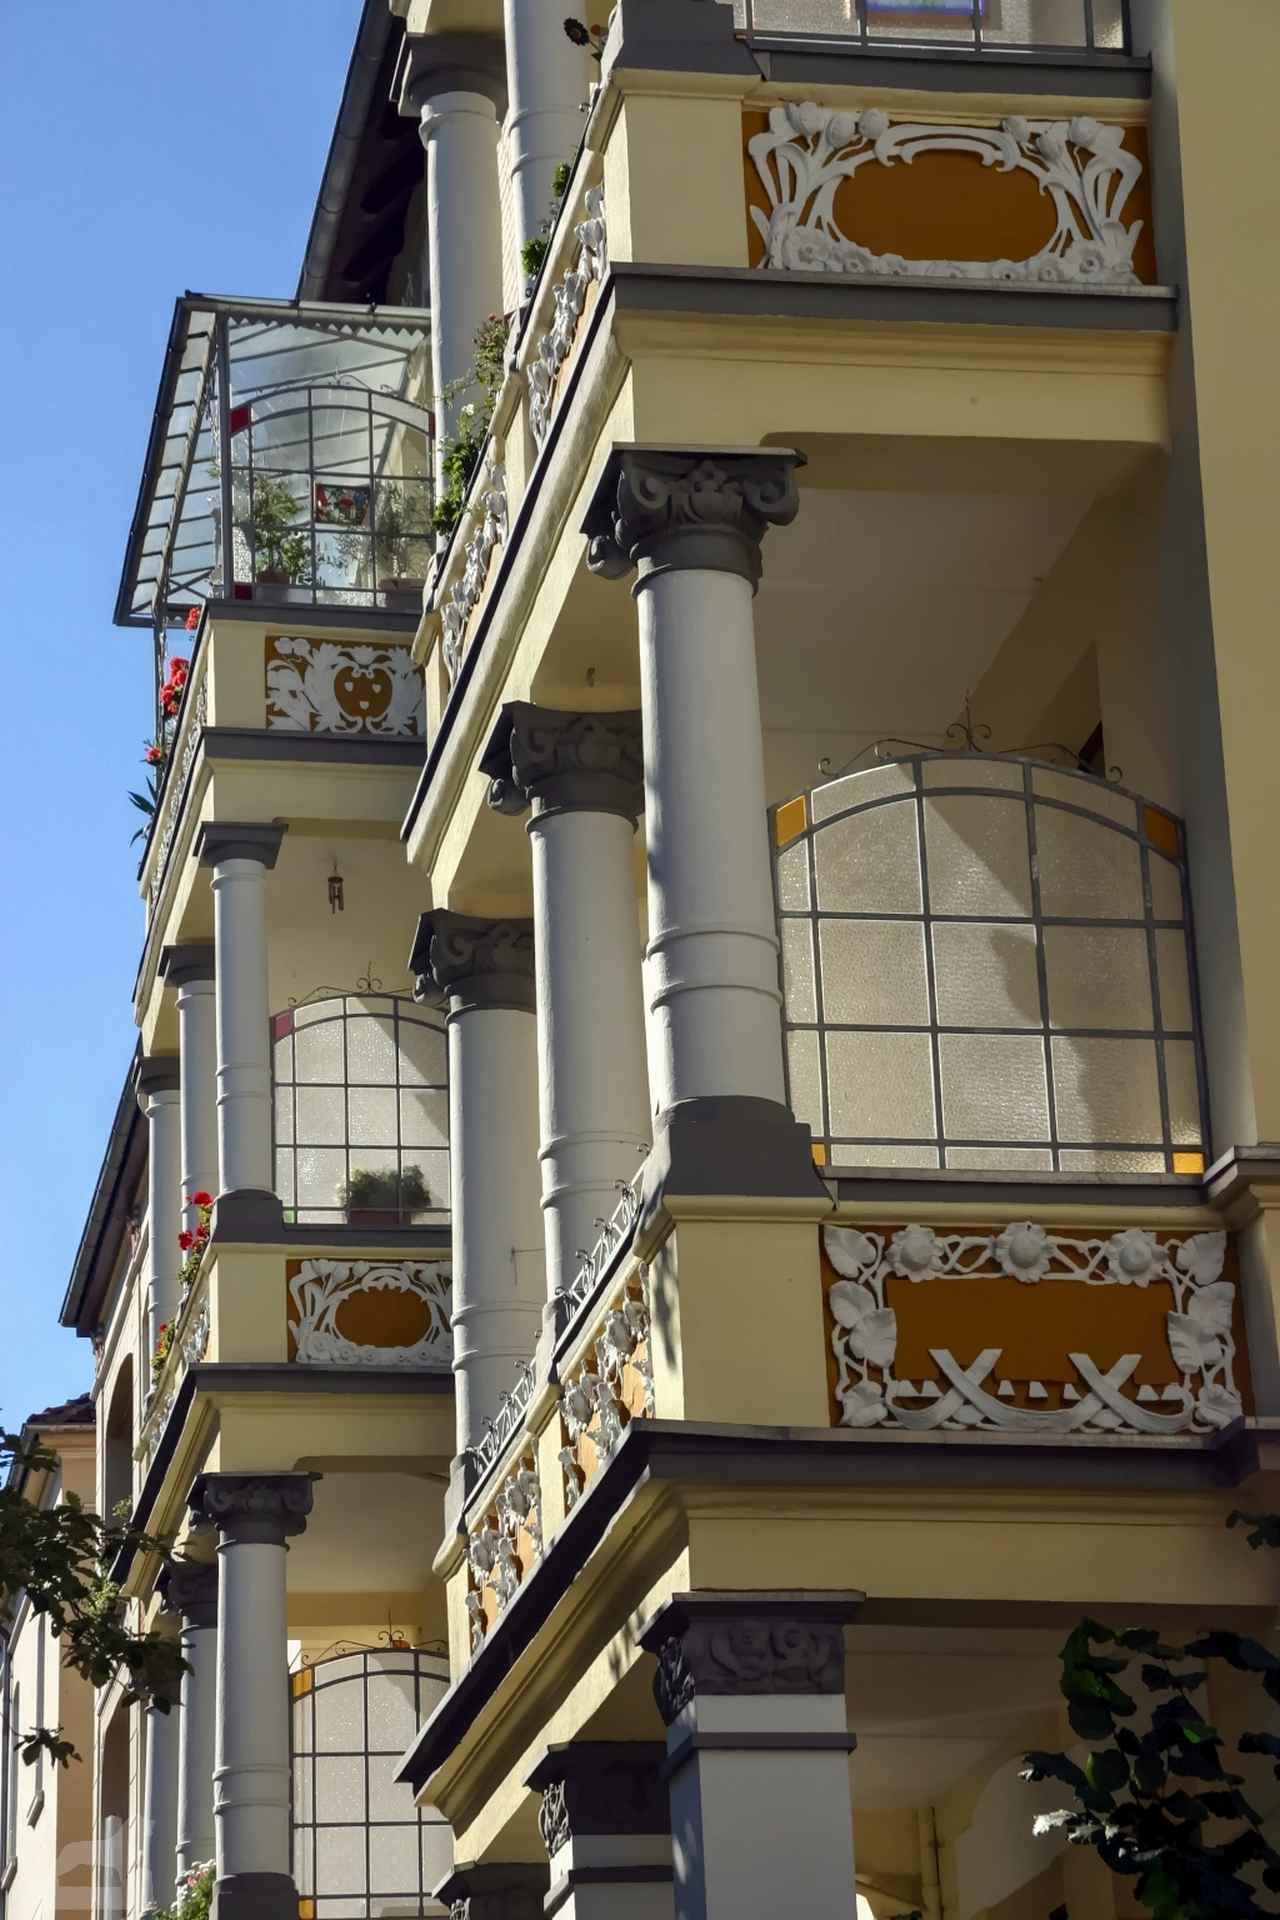 Balkone in der Fasanenstraße